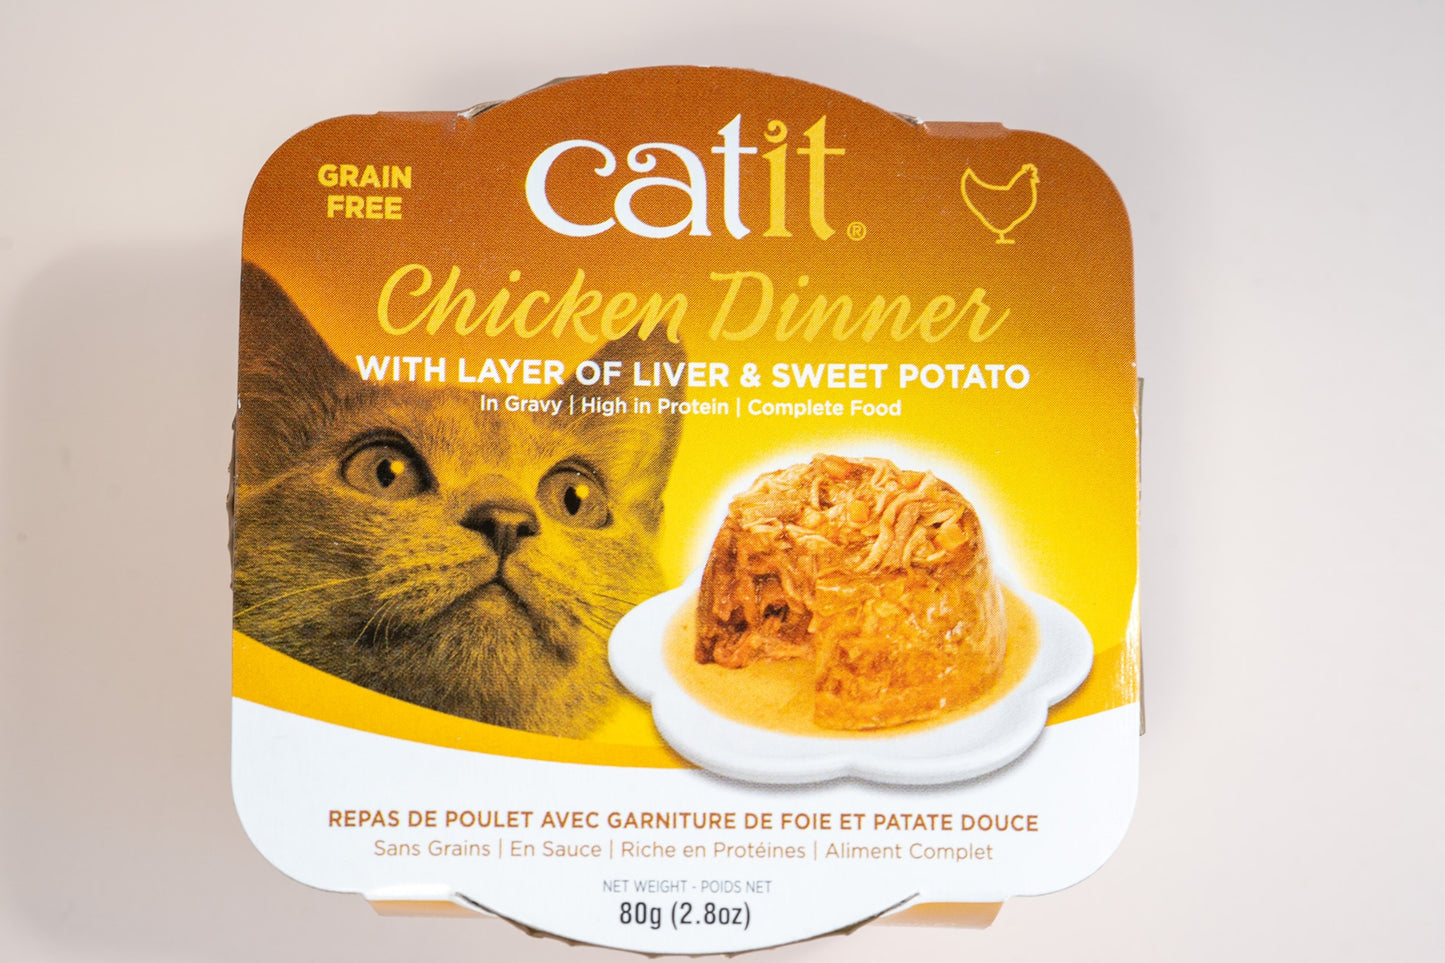 Vue de face de la nourriture humide pour chats Catit Chicken Dinner avec une couche de saveur de foie et patate douce.